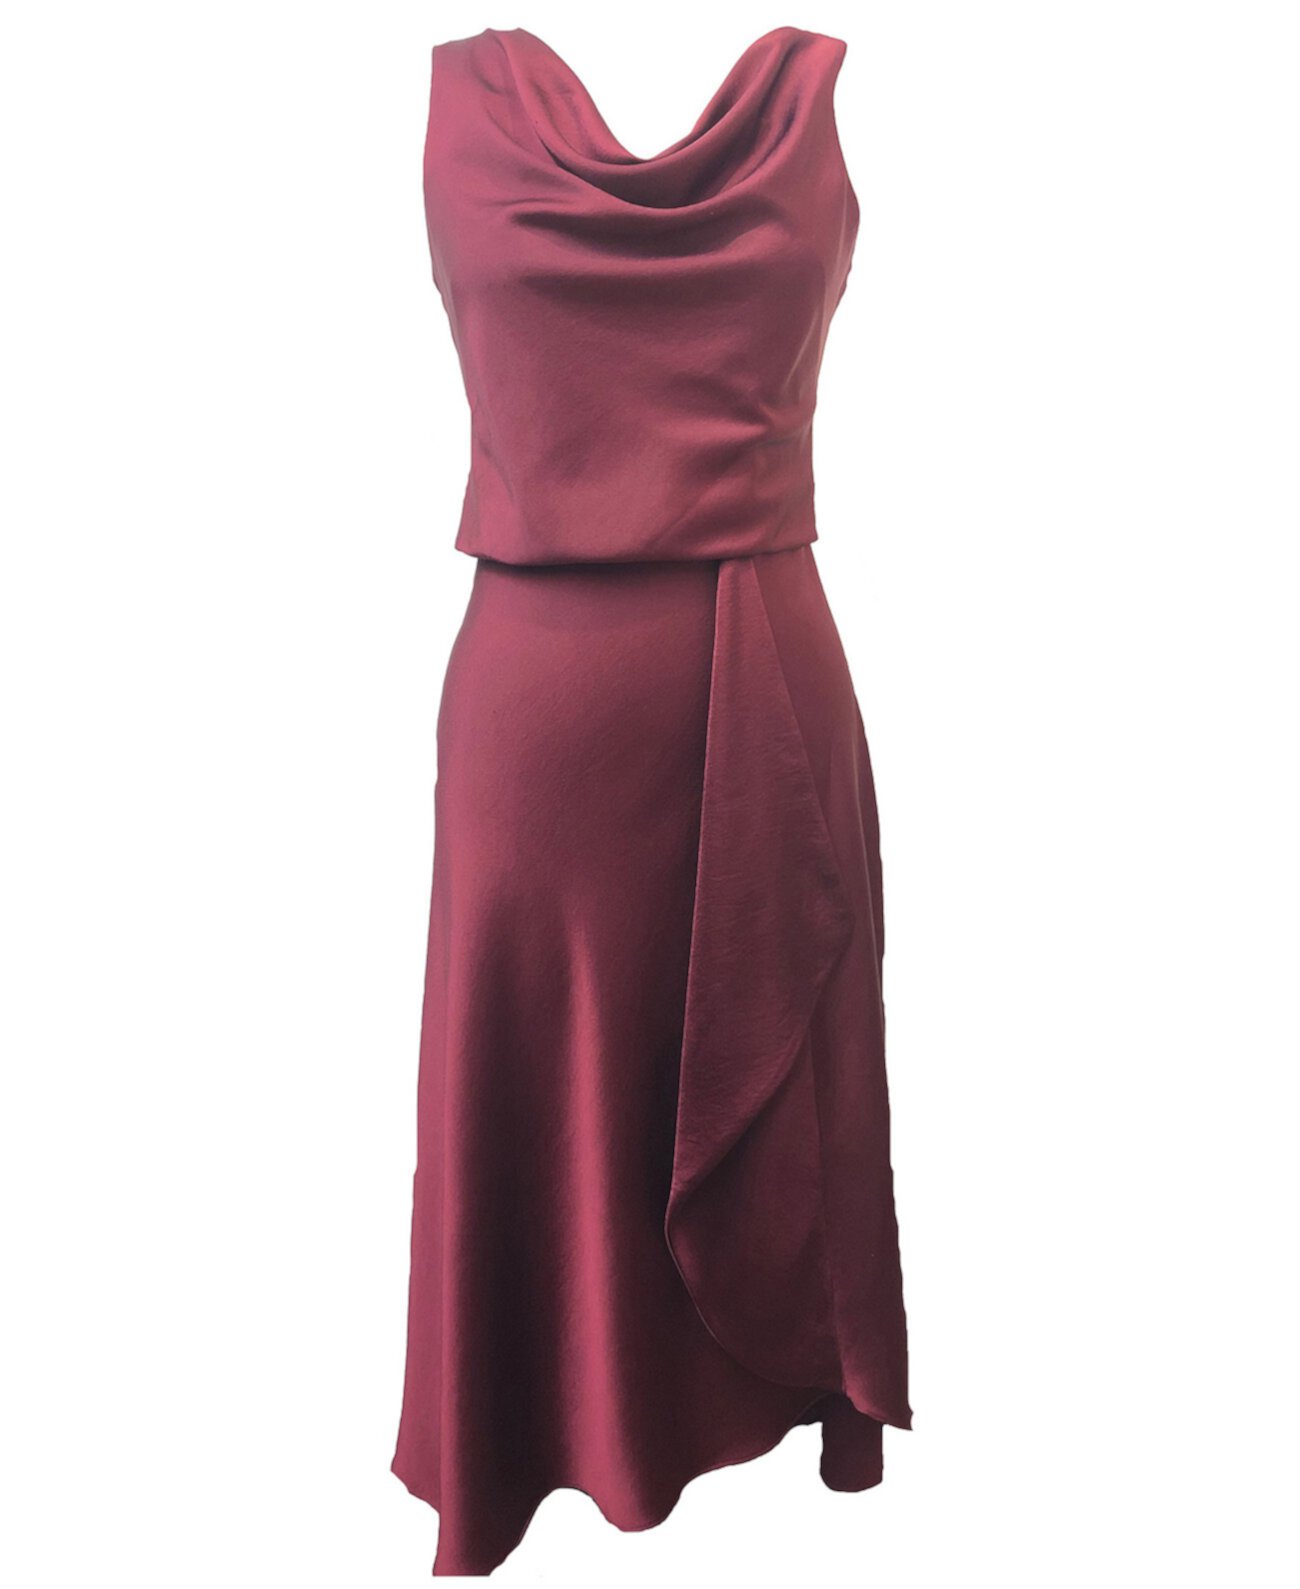 Asymmetrical A-Line Dress Taylor